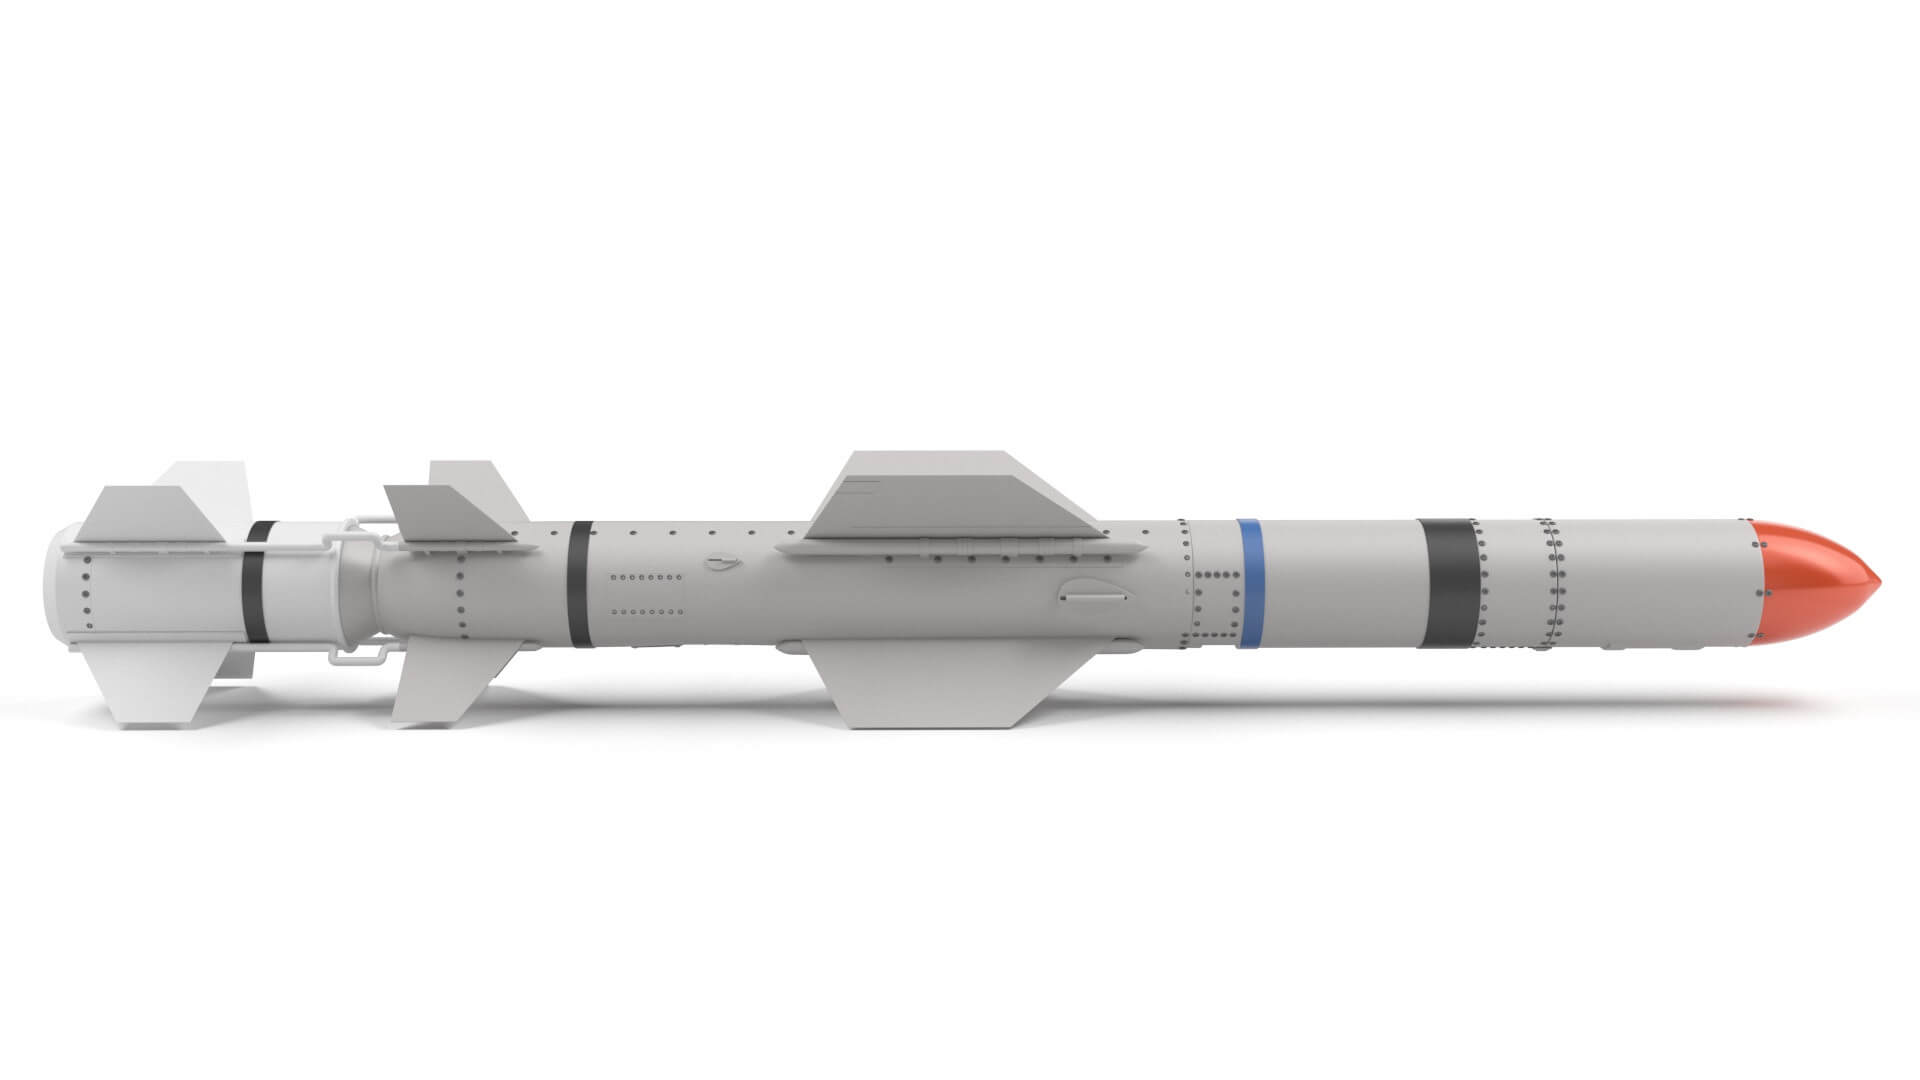 agm-ugm-rgm-84-harpoon-anti-ship-missile-11.jpg